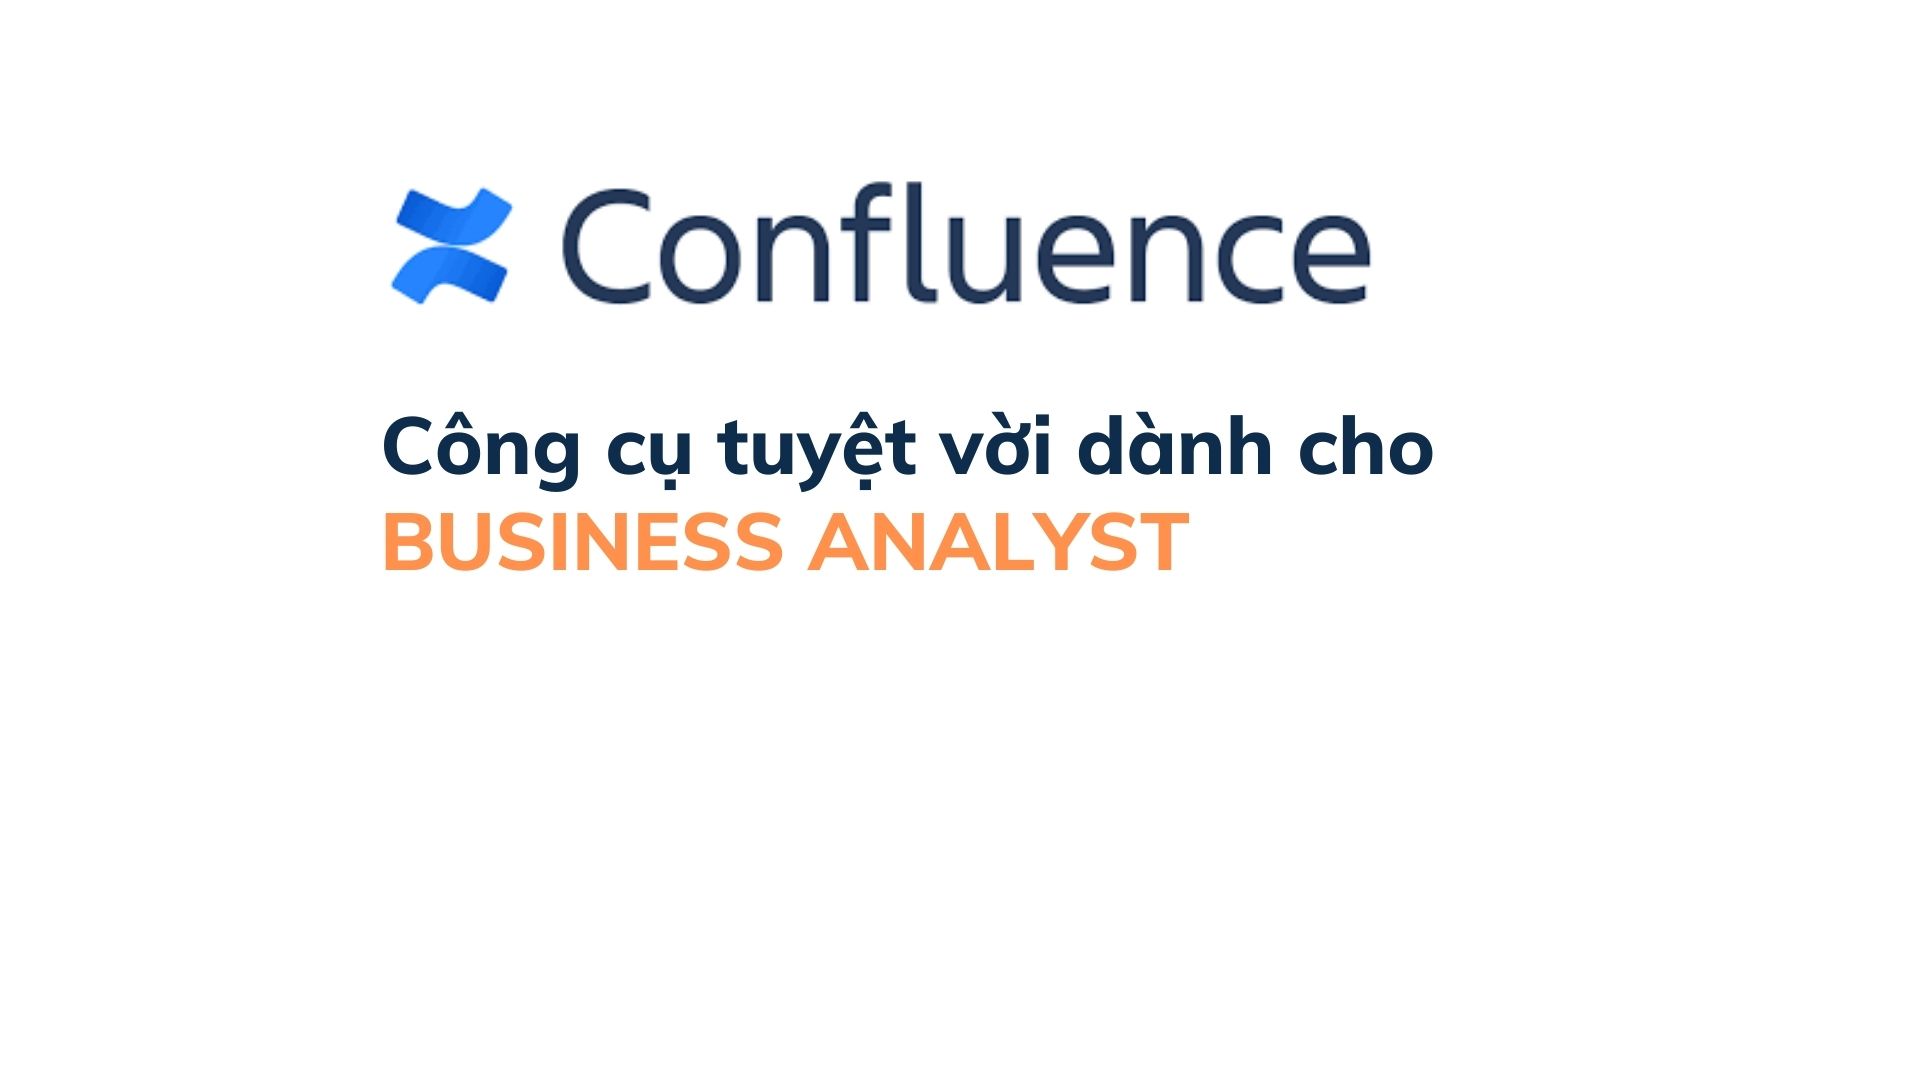 Confluence là gì? Vì Sao Business analyst nên sử dụng CONFLUENCE để viết và quản lý tài liệu